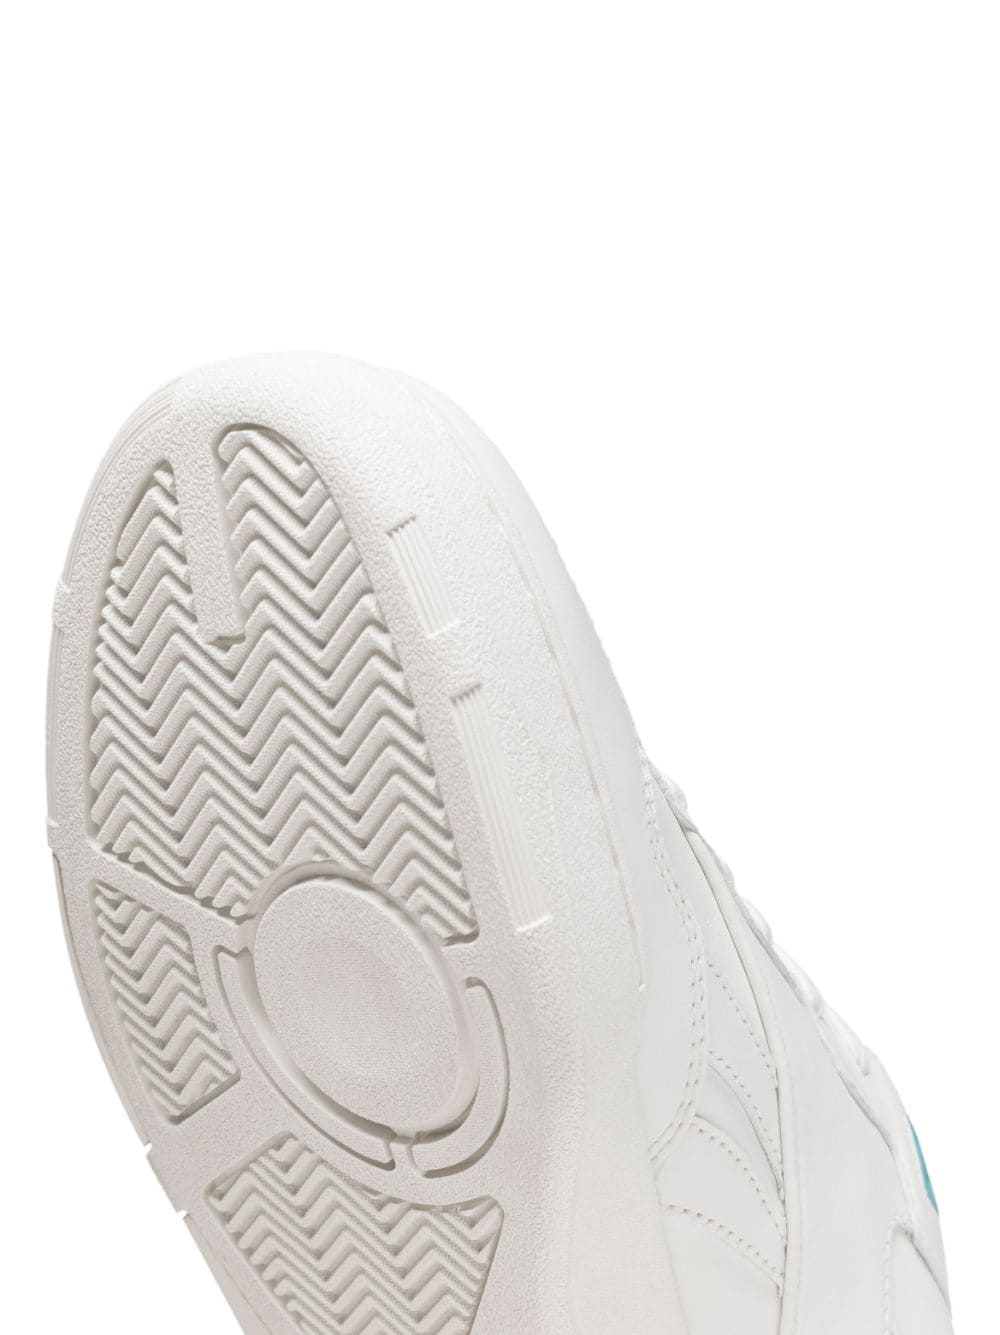 Sneaker BB 4000 II in ecopelle bianca